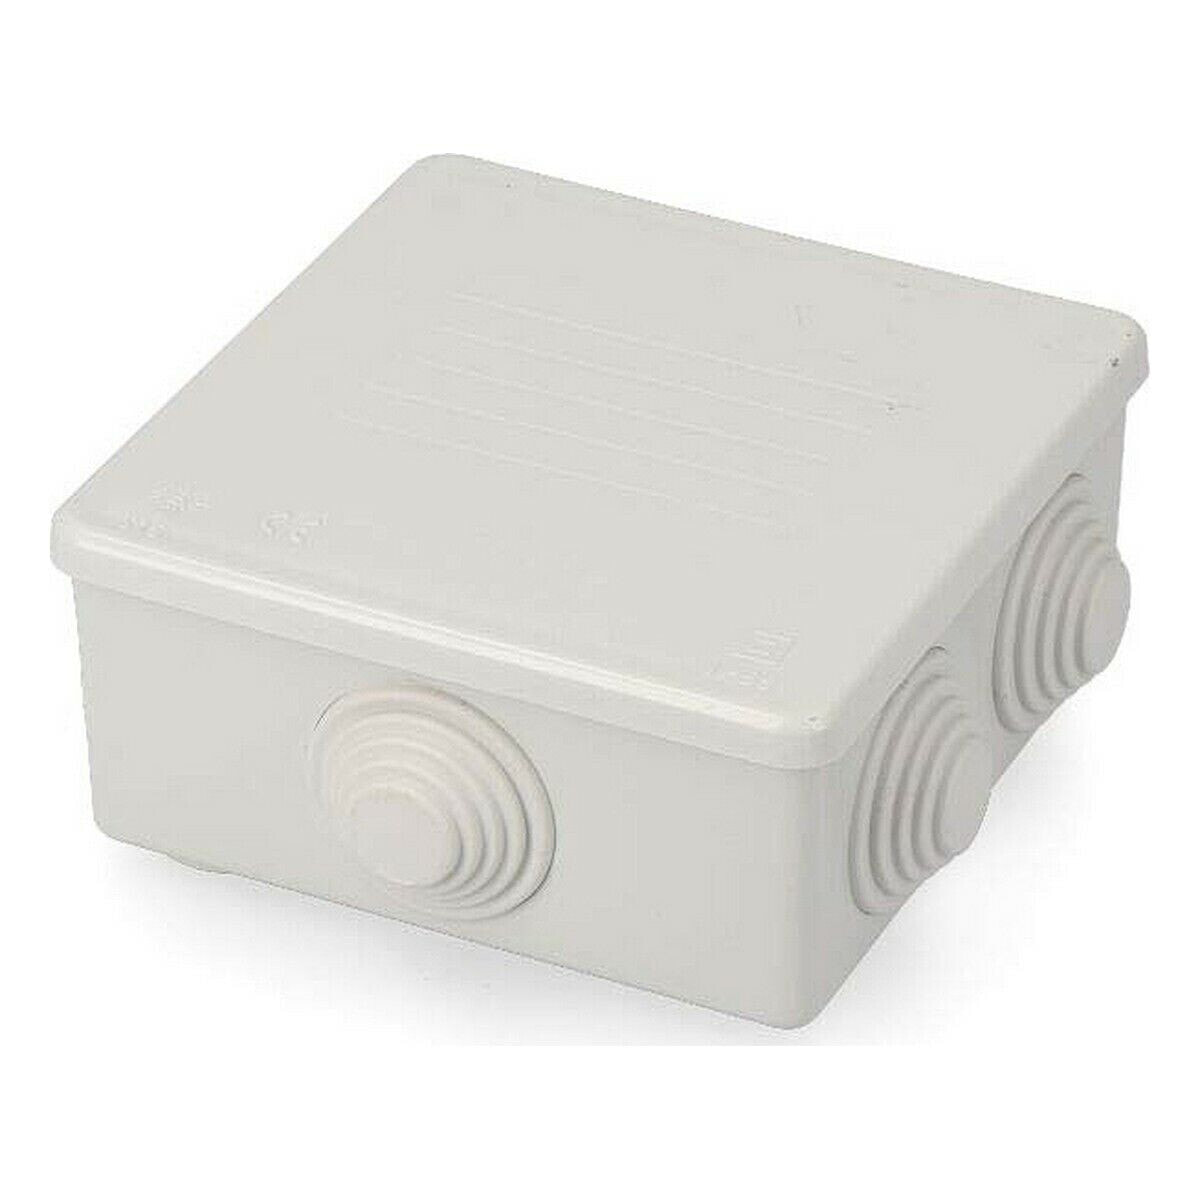 Коробка для записи Solera s615 Водонепроницаемый Квадратный (110 x 110 x 45 mm)